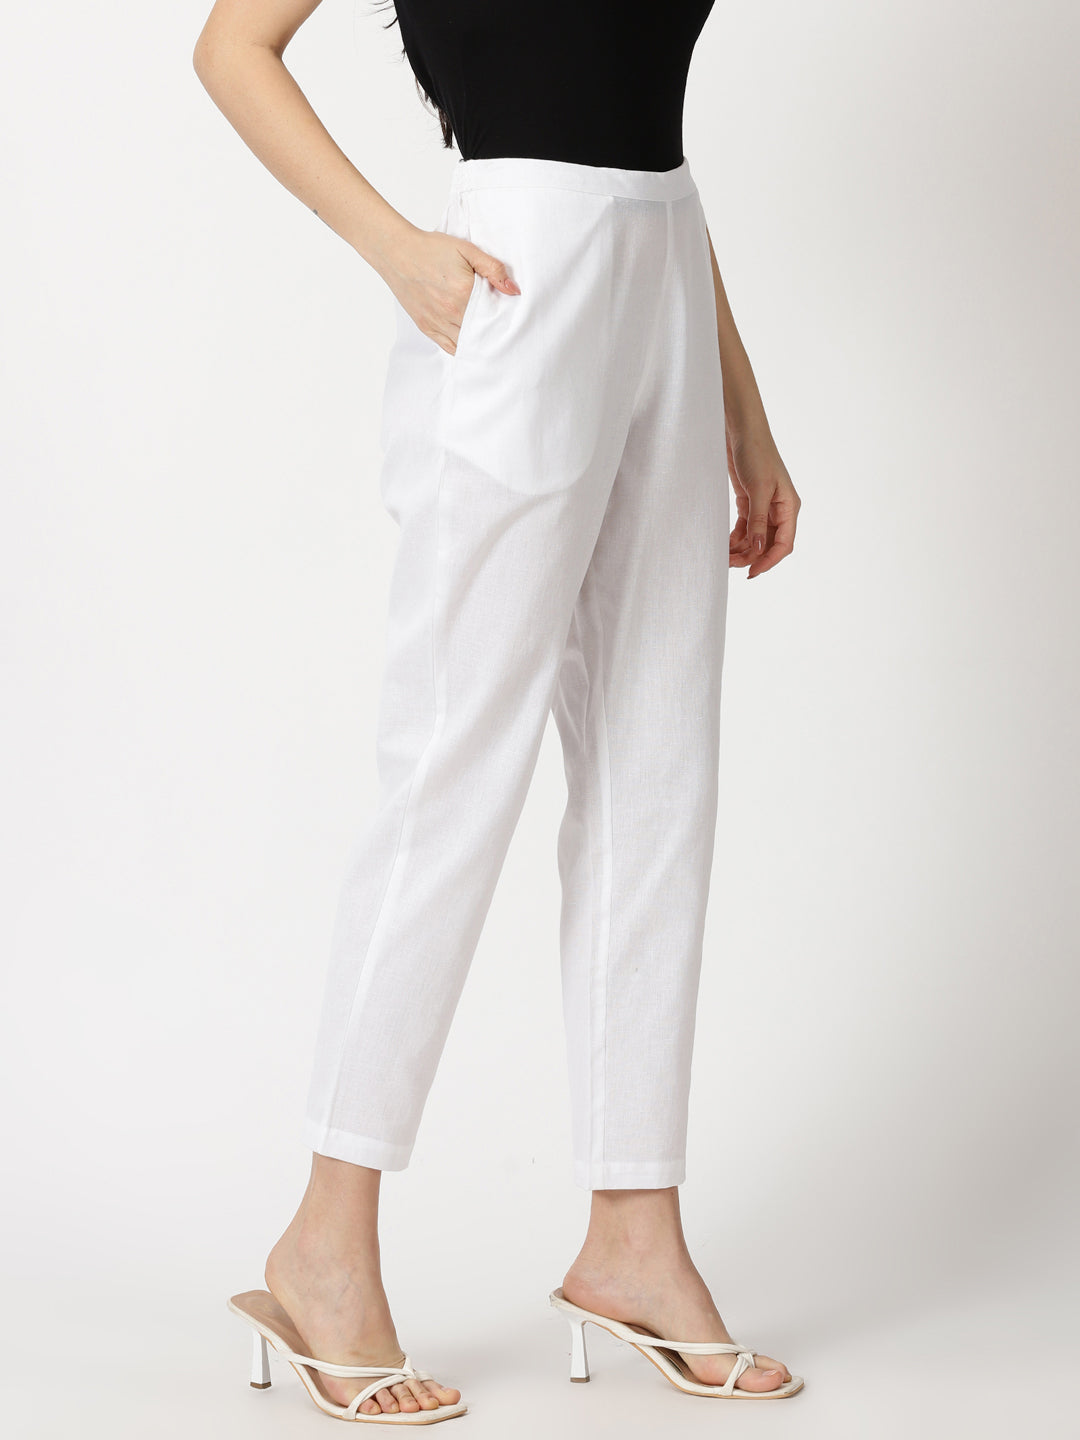 Ladies Cotton Plain Pant Waist Size 2836